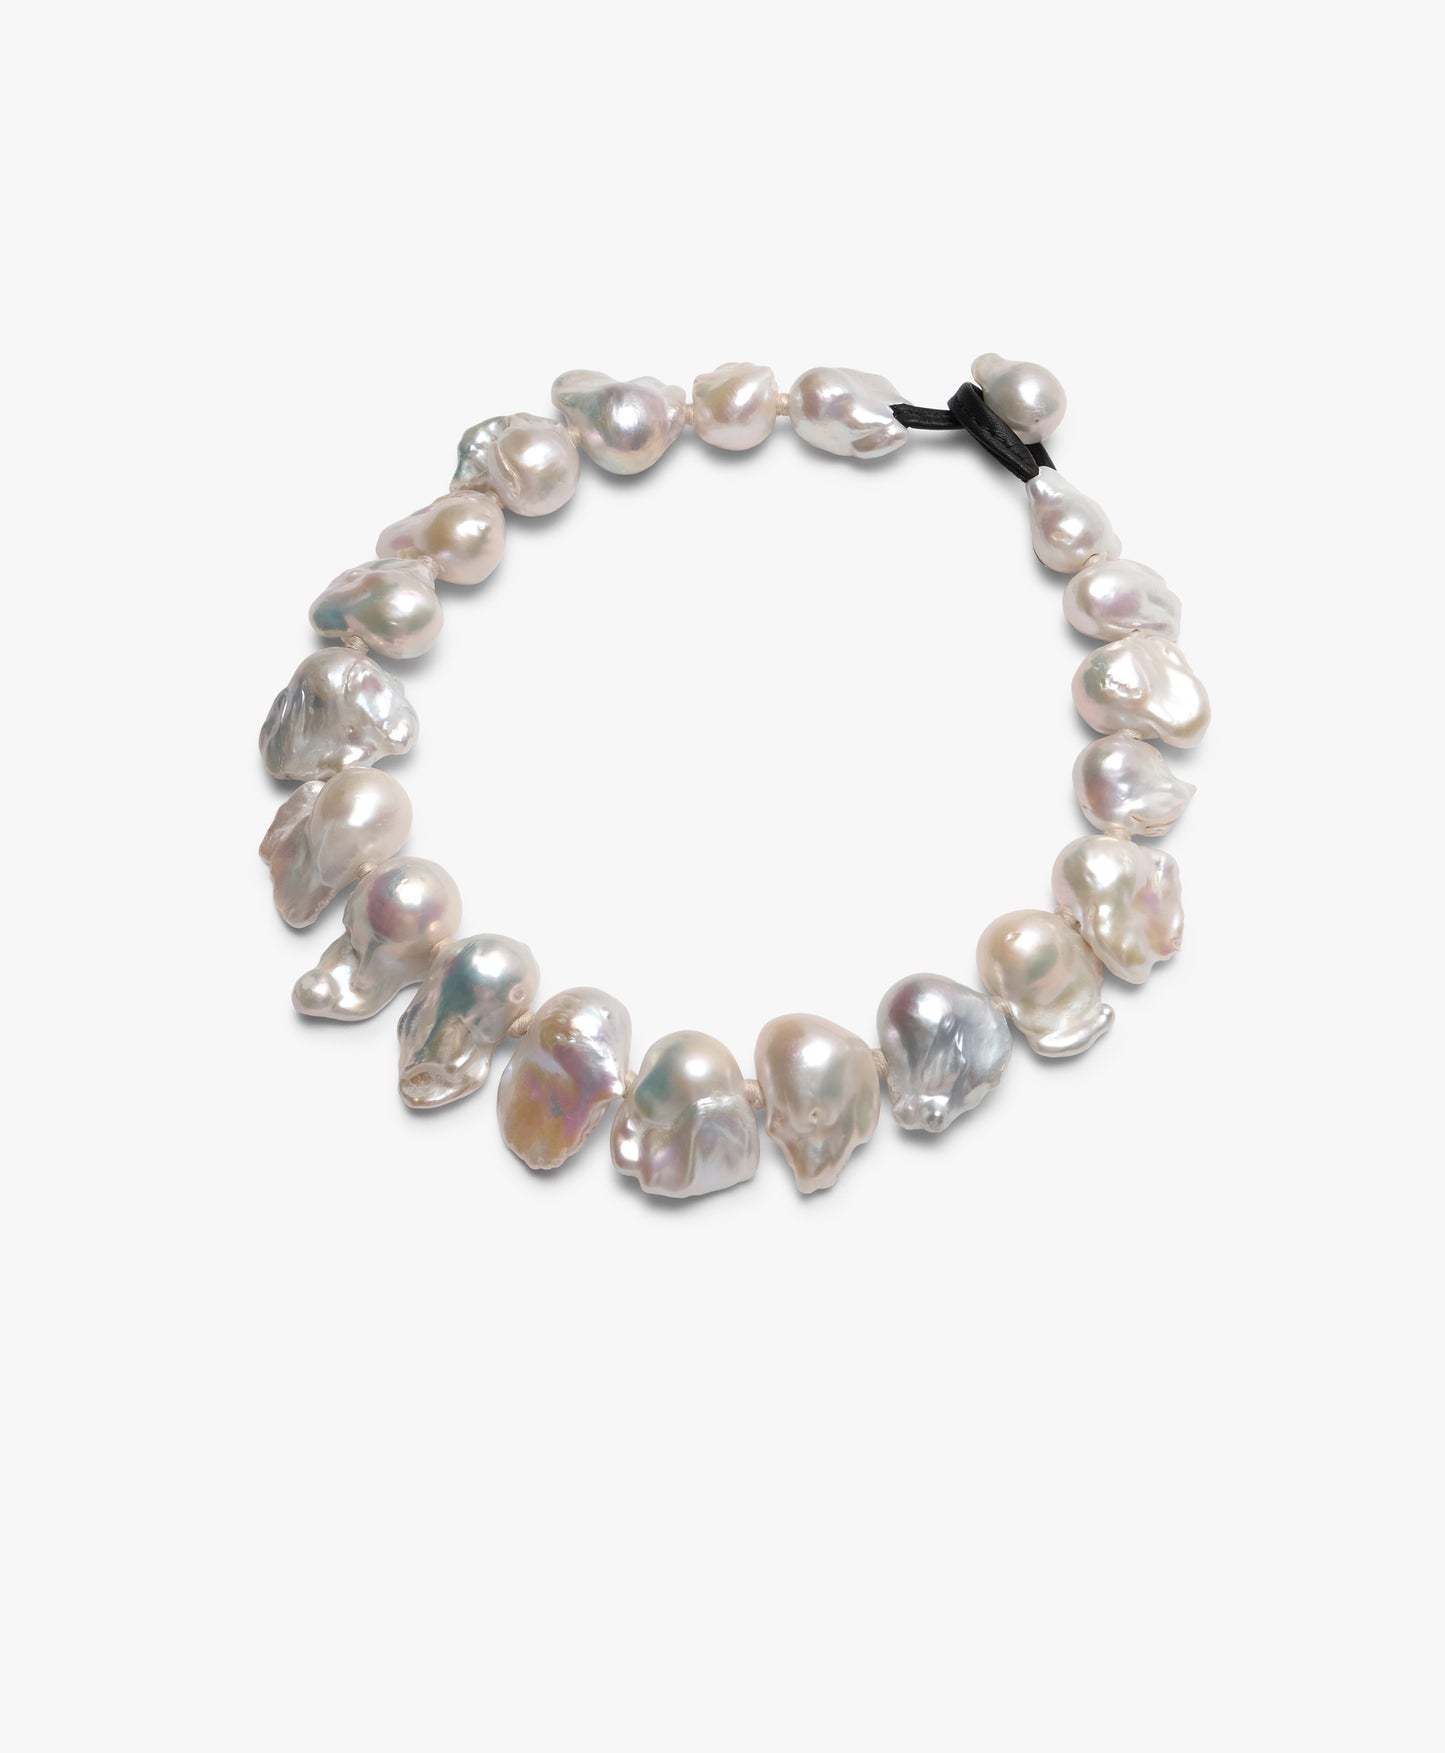 Necklace: wild baroque pearls